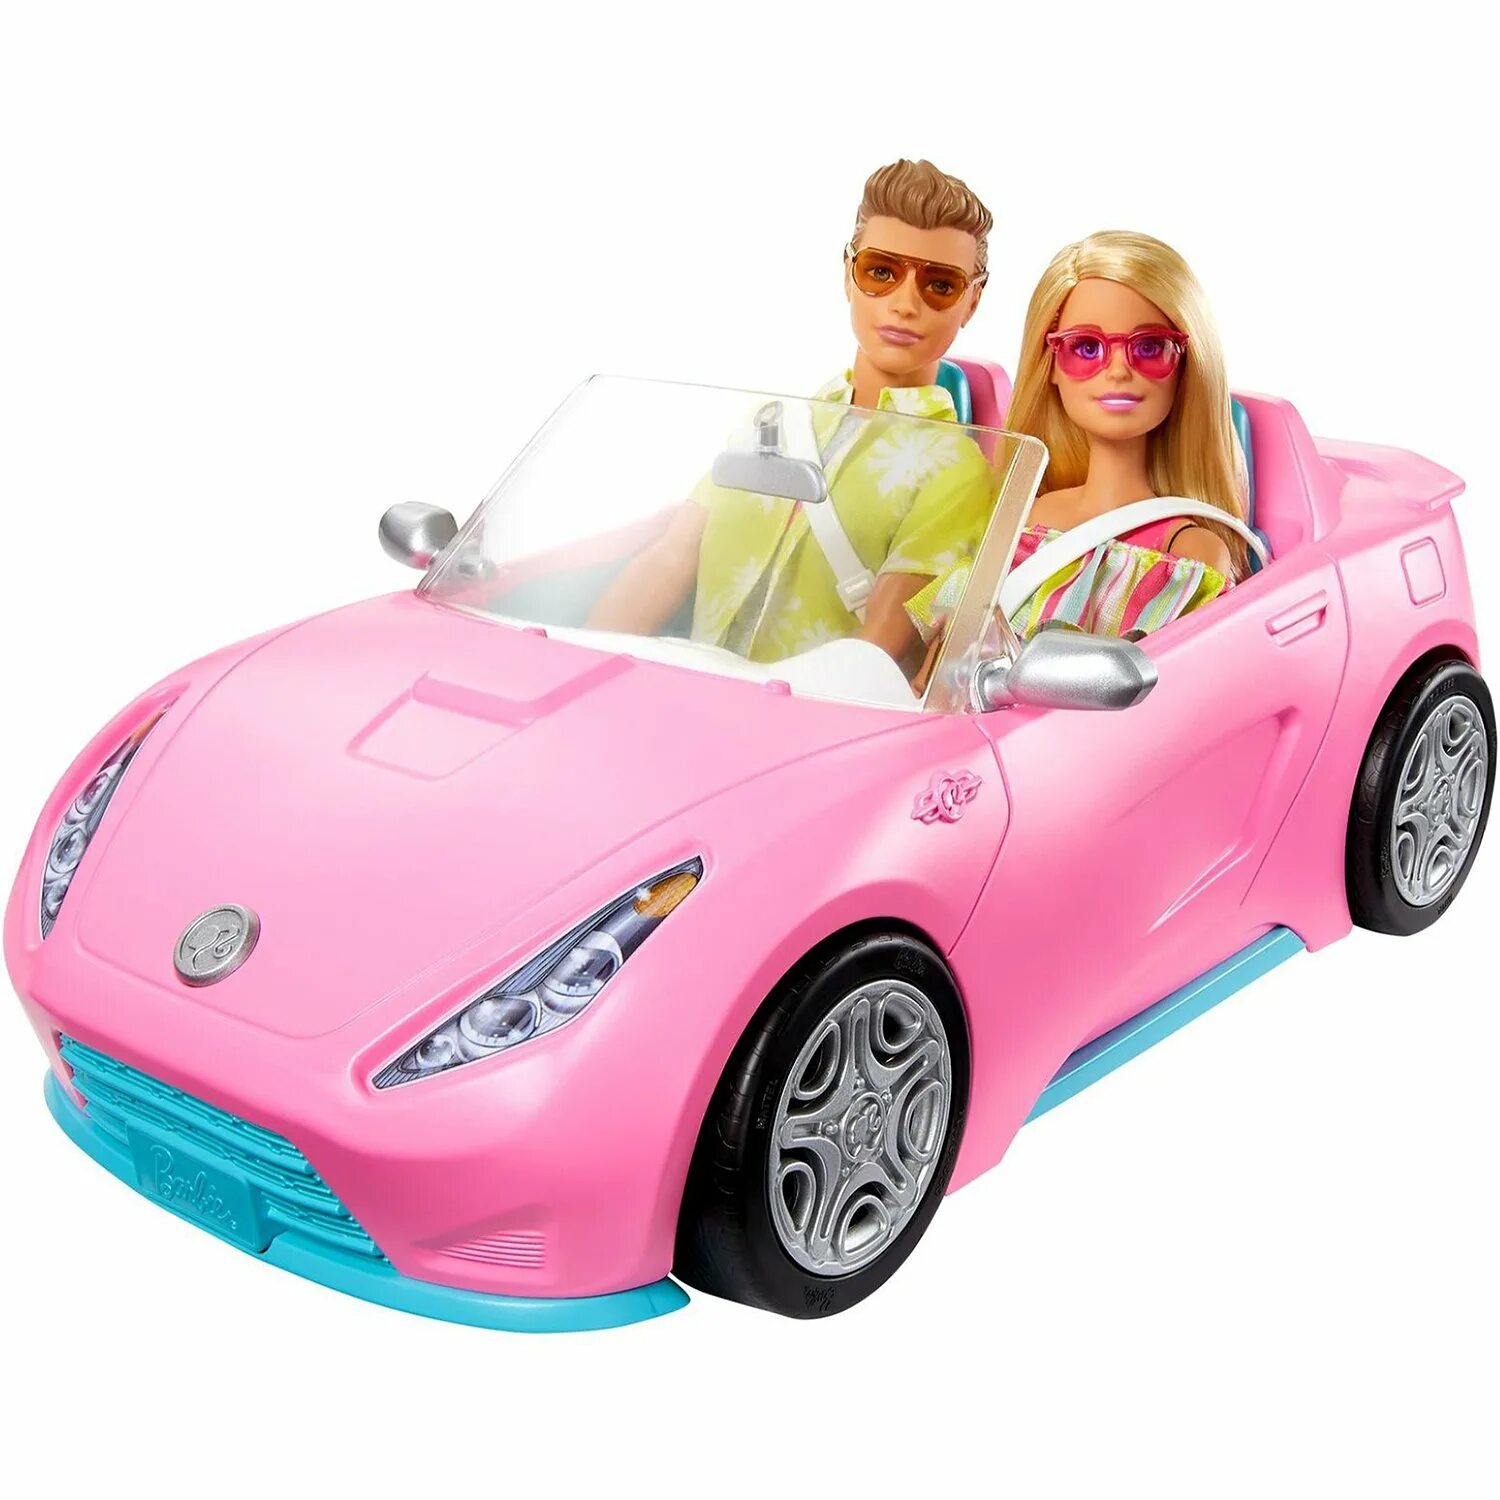 Набор игровой Barbie 2куклы +автомобиль +аксессуары gjb71. Набор Барби gjb71. Набор Барби и Кен с машиной. Набор Барби Кен машина бассейн.